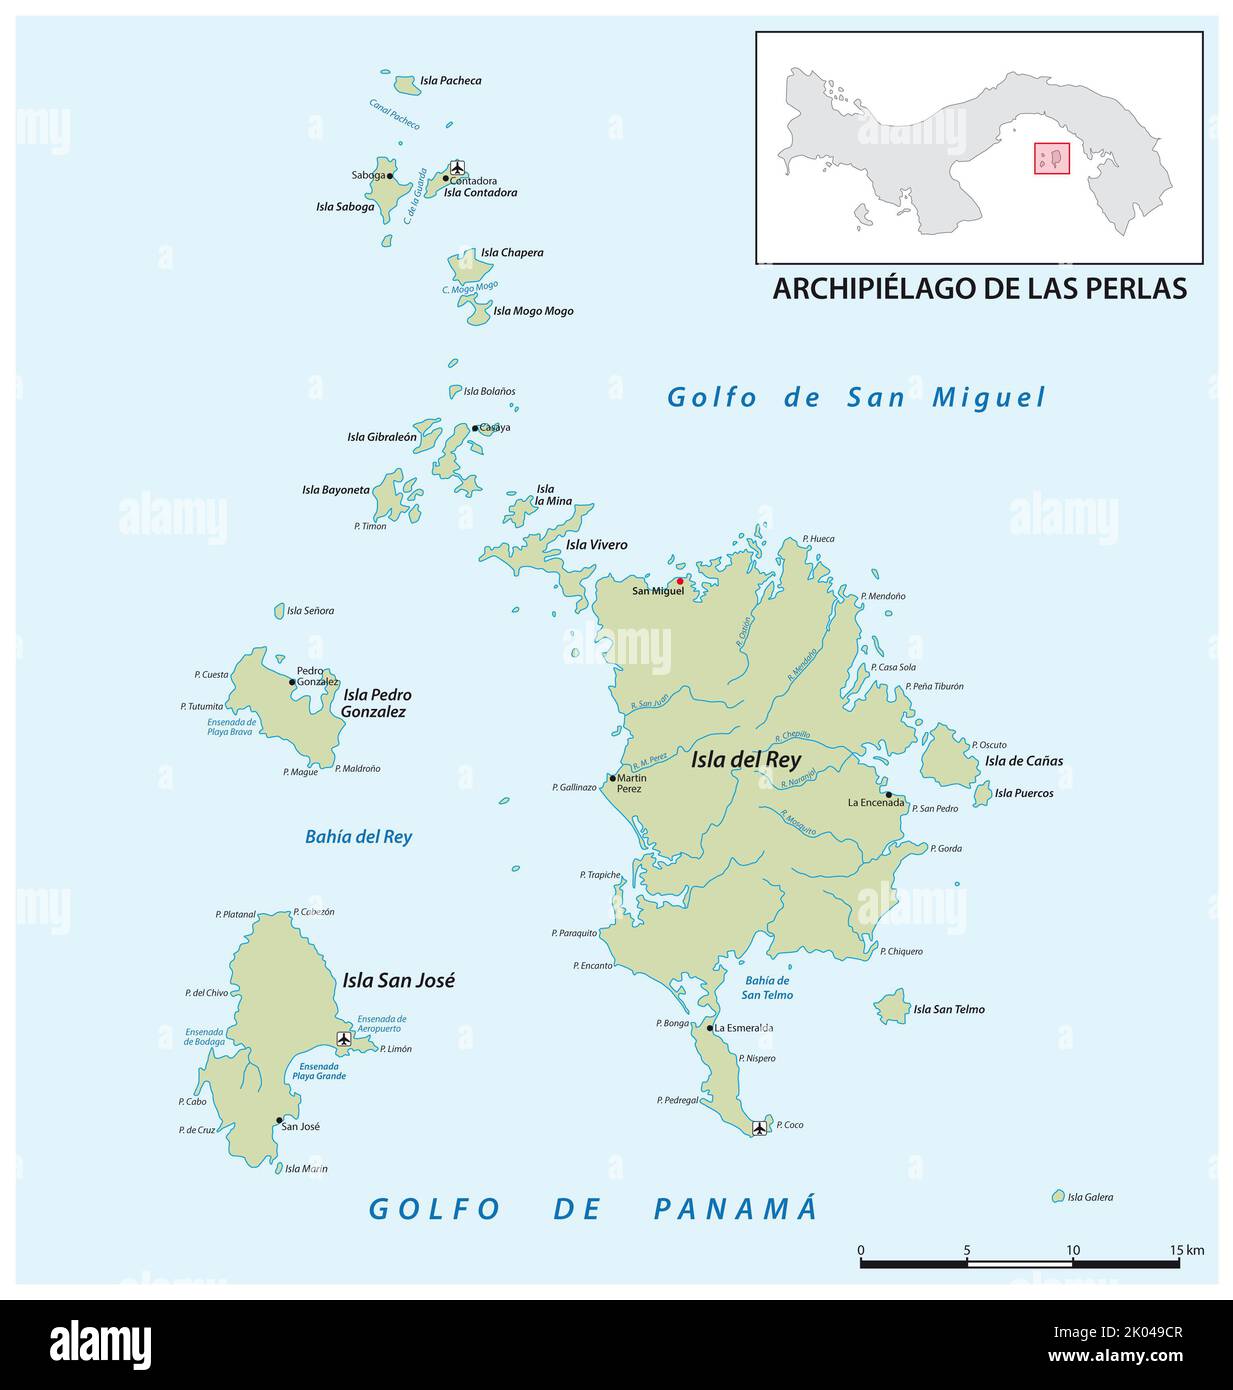 Mapa vectorial de las islas de perlas del archipiélago panamés en el golfo de panamá Foto de stock